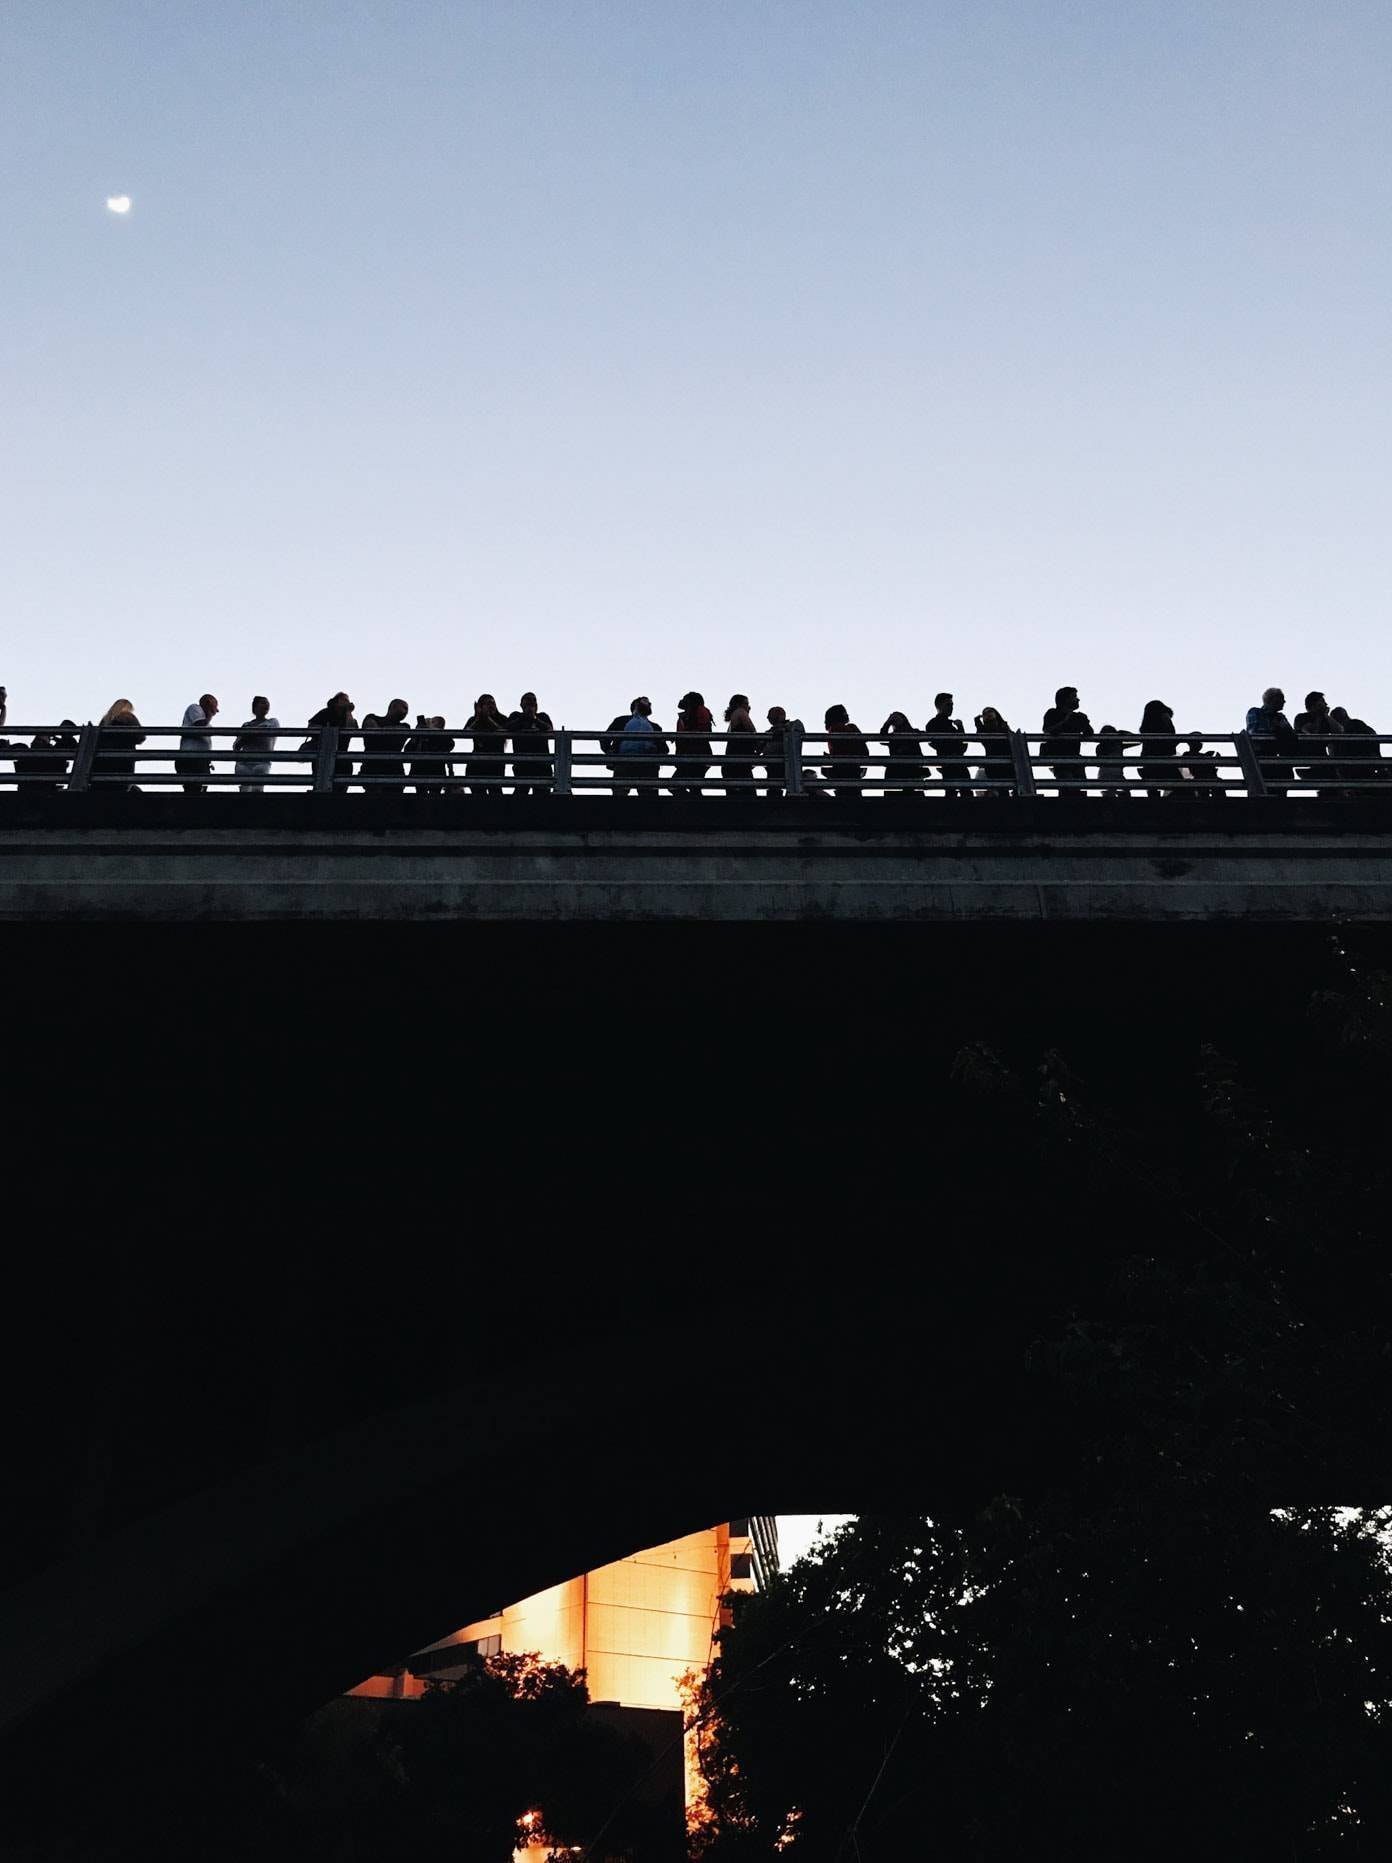 People on a bridge.